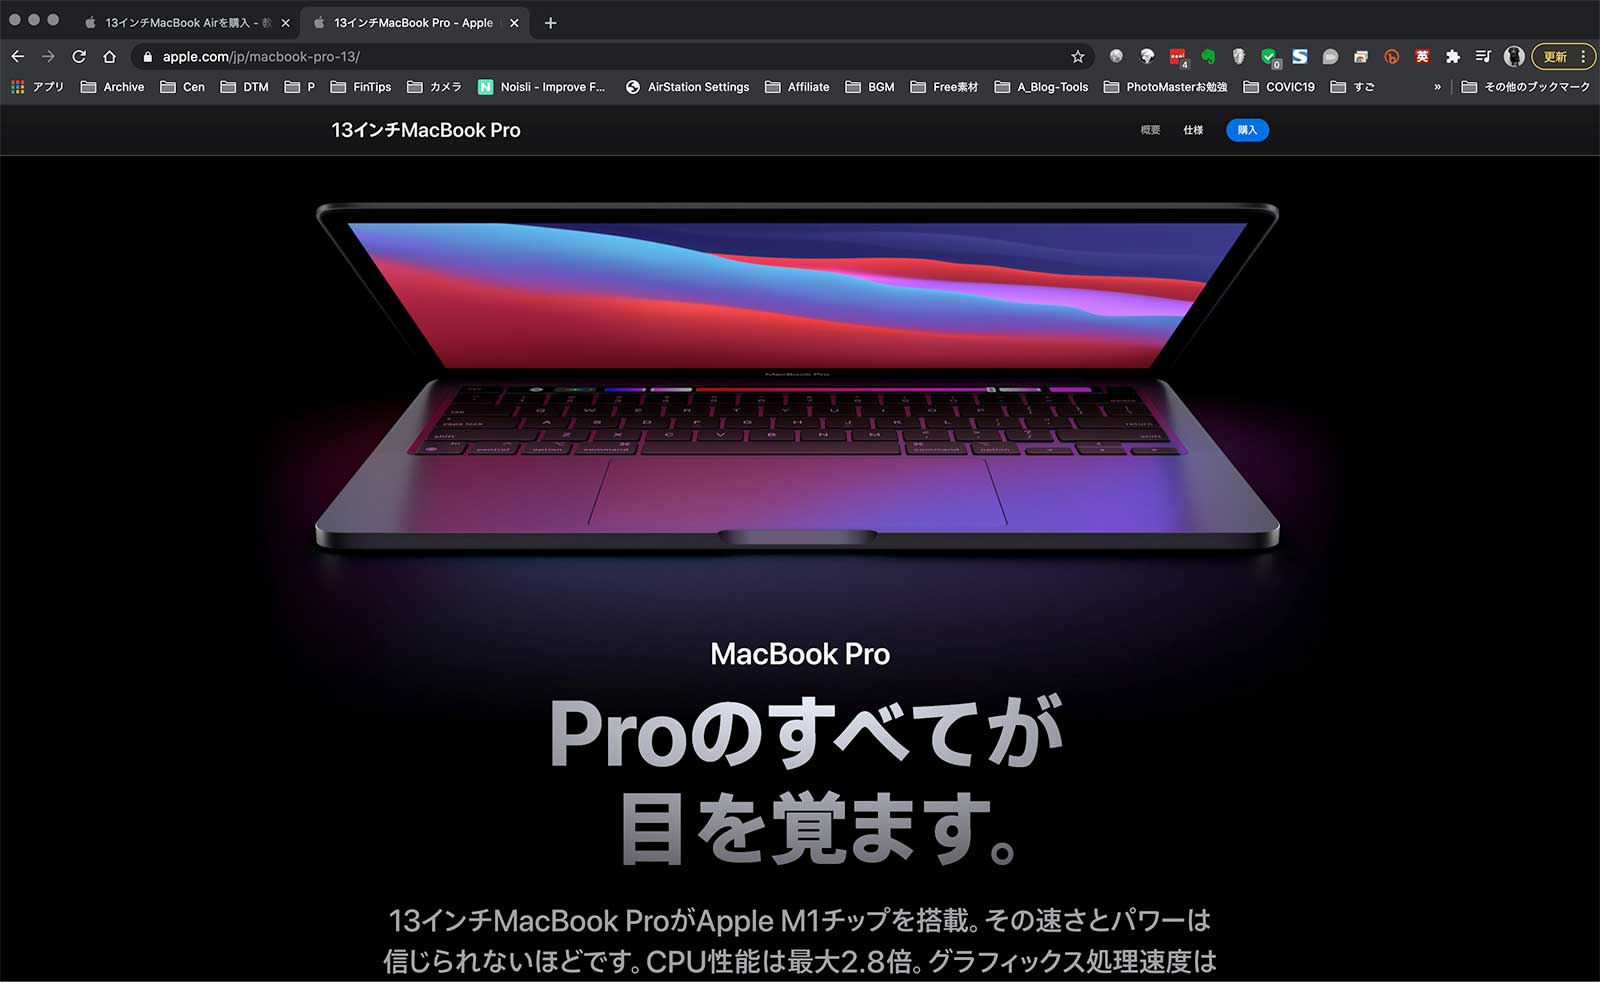 MacBook-Pro